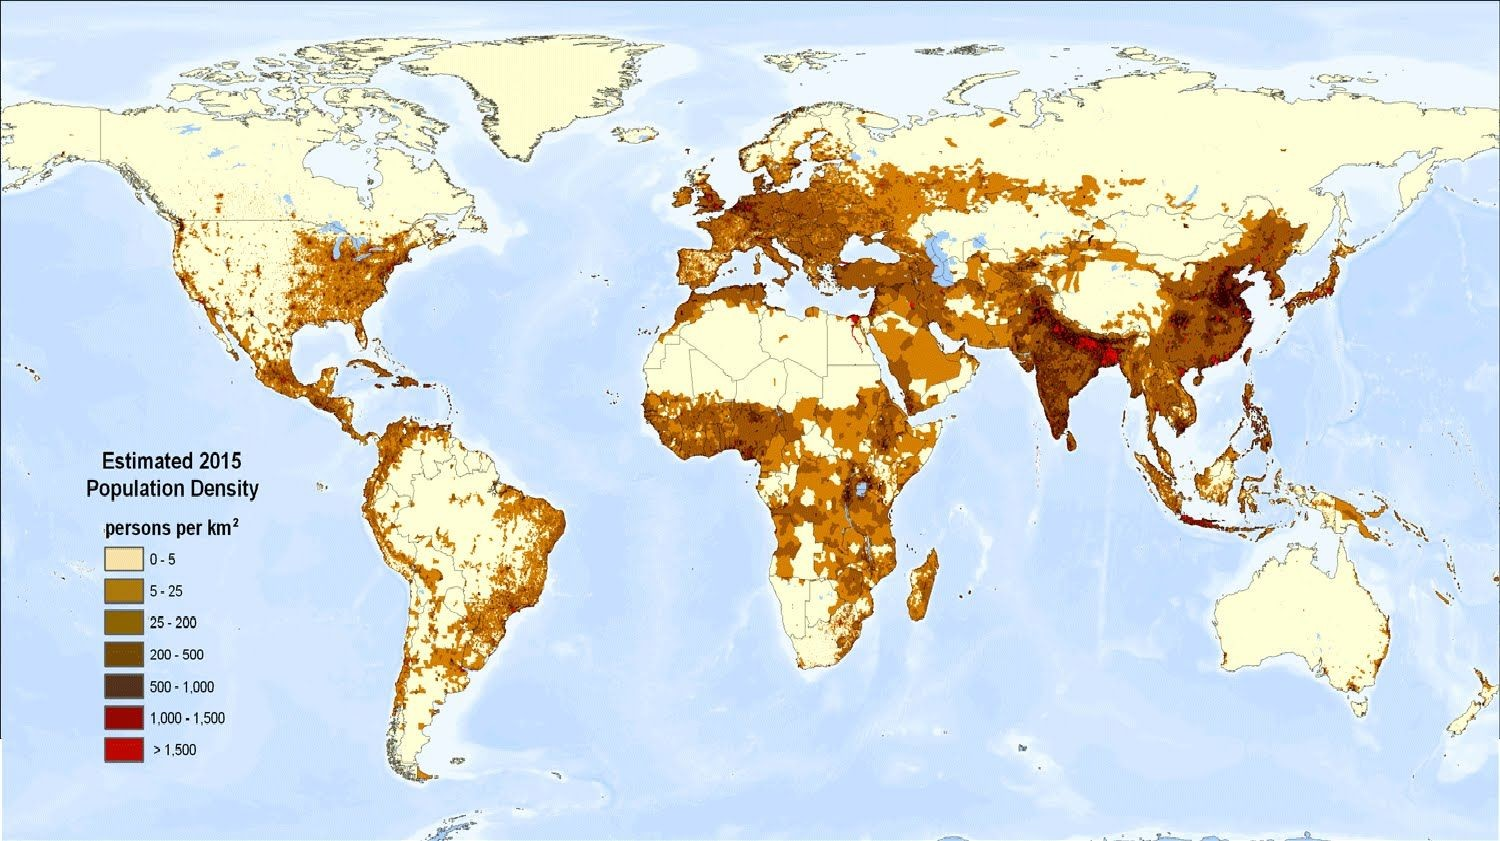 全球人口分布图图片